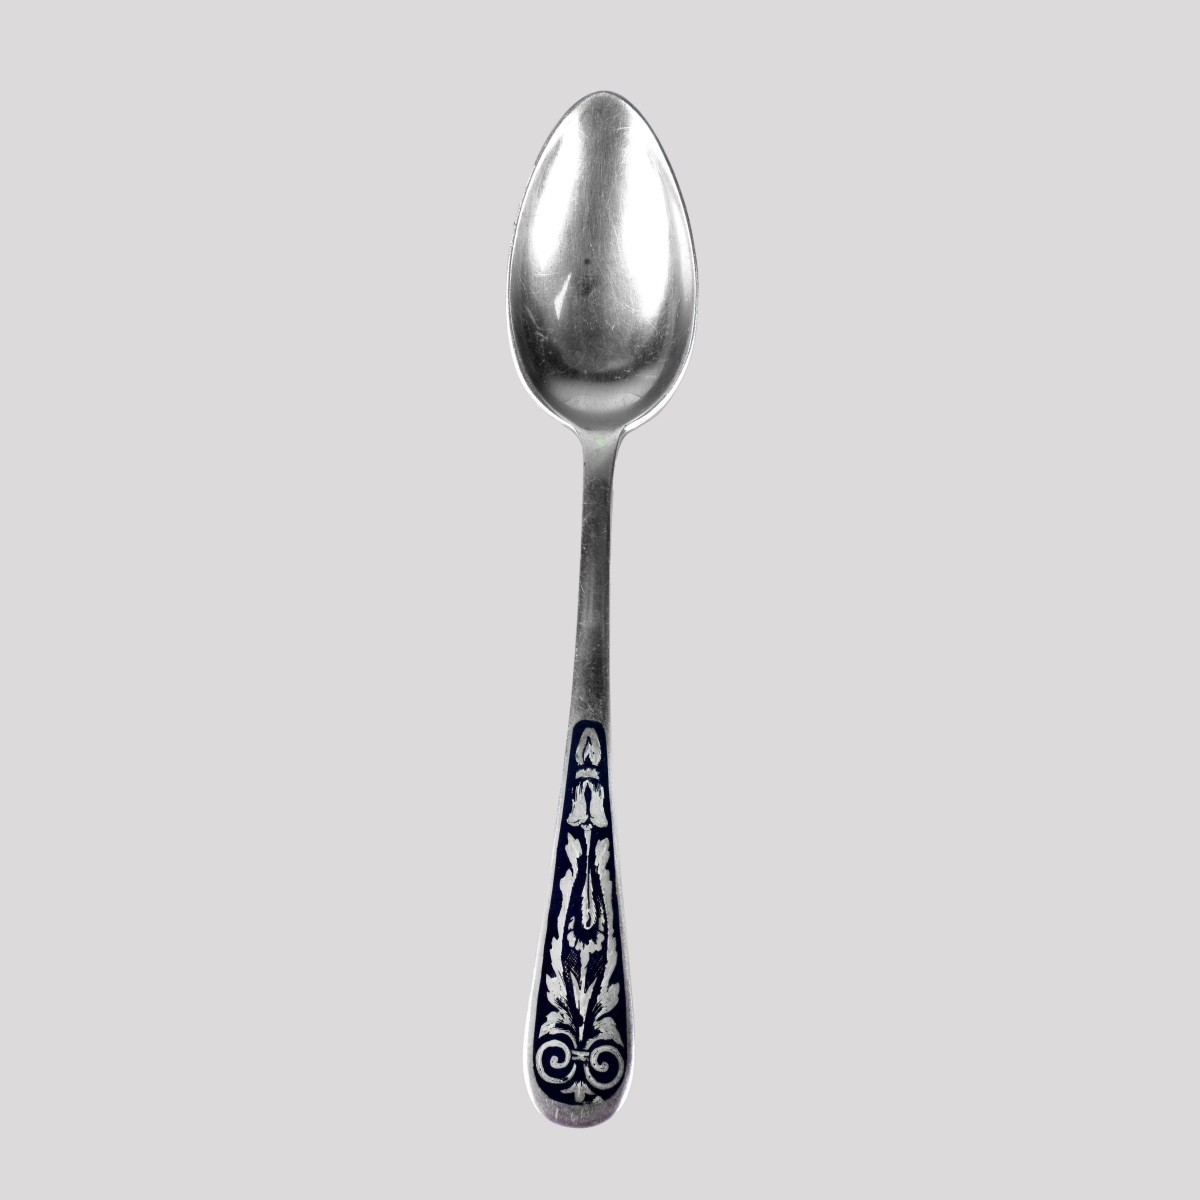 Eleven Russian Niello 875 Silver Spoons